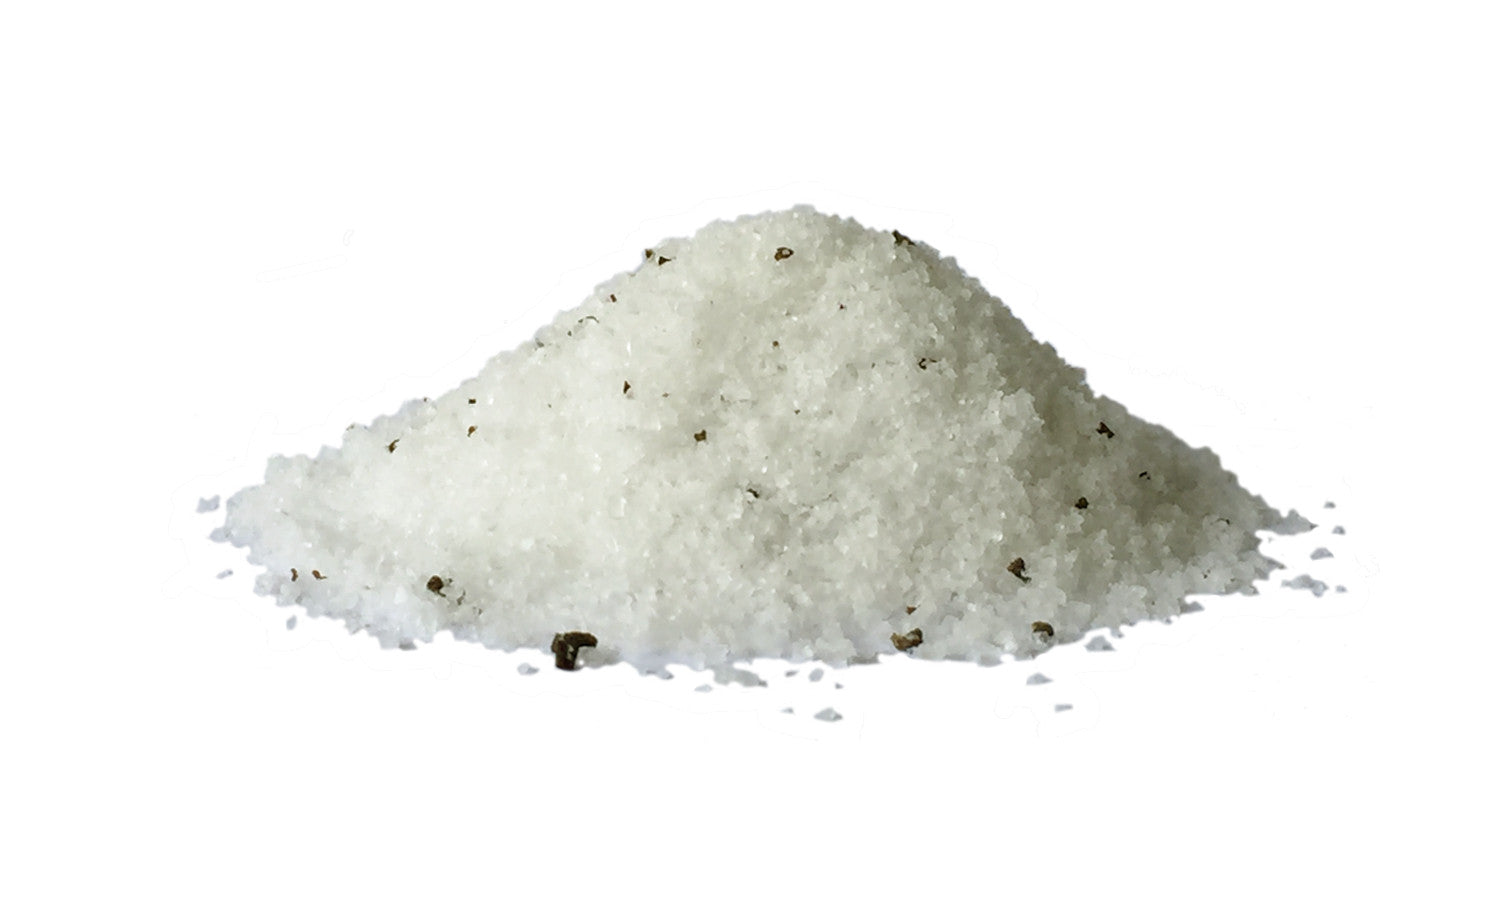 Black Truffle Sea Salt - HEPPS SALT CO. 